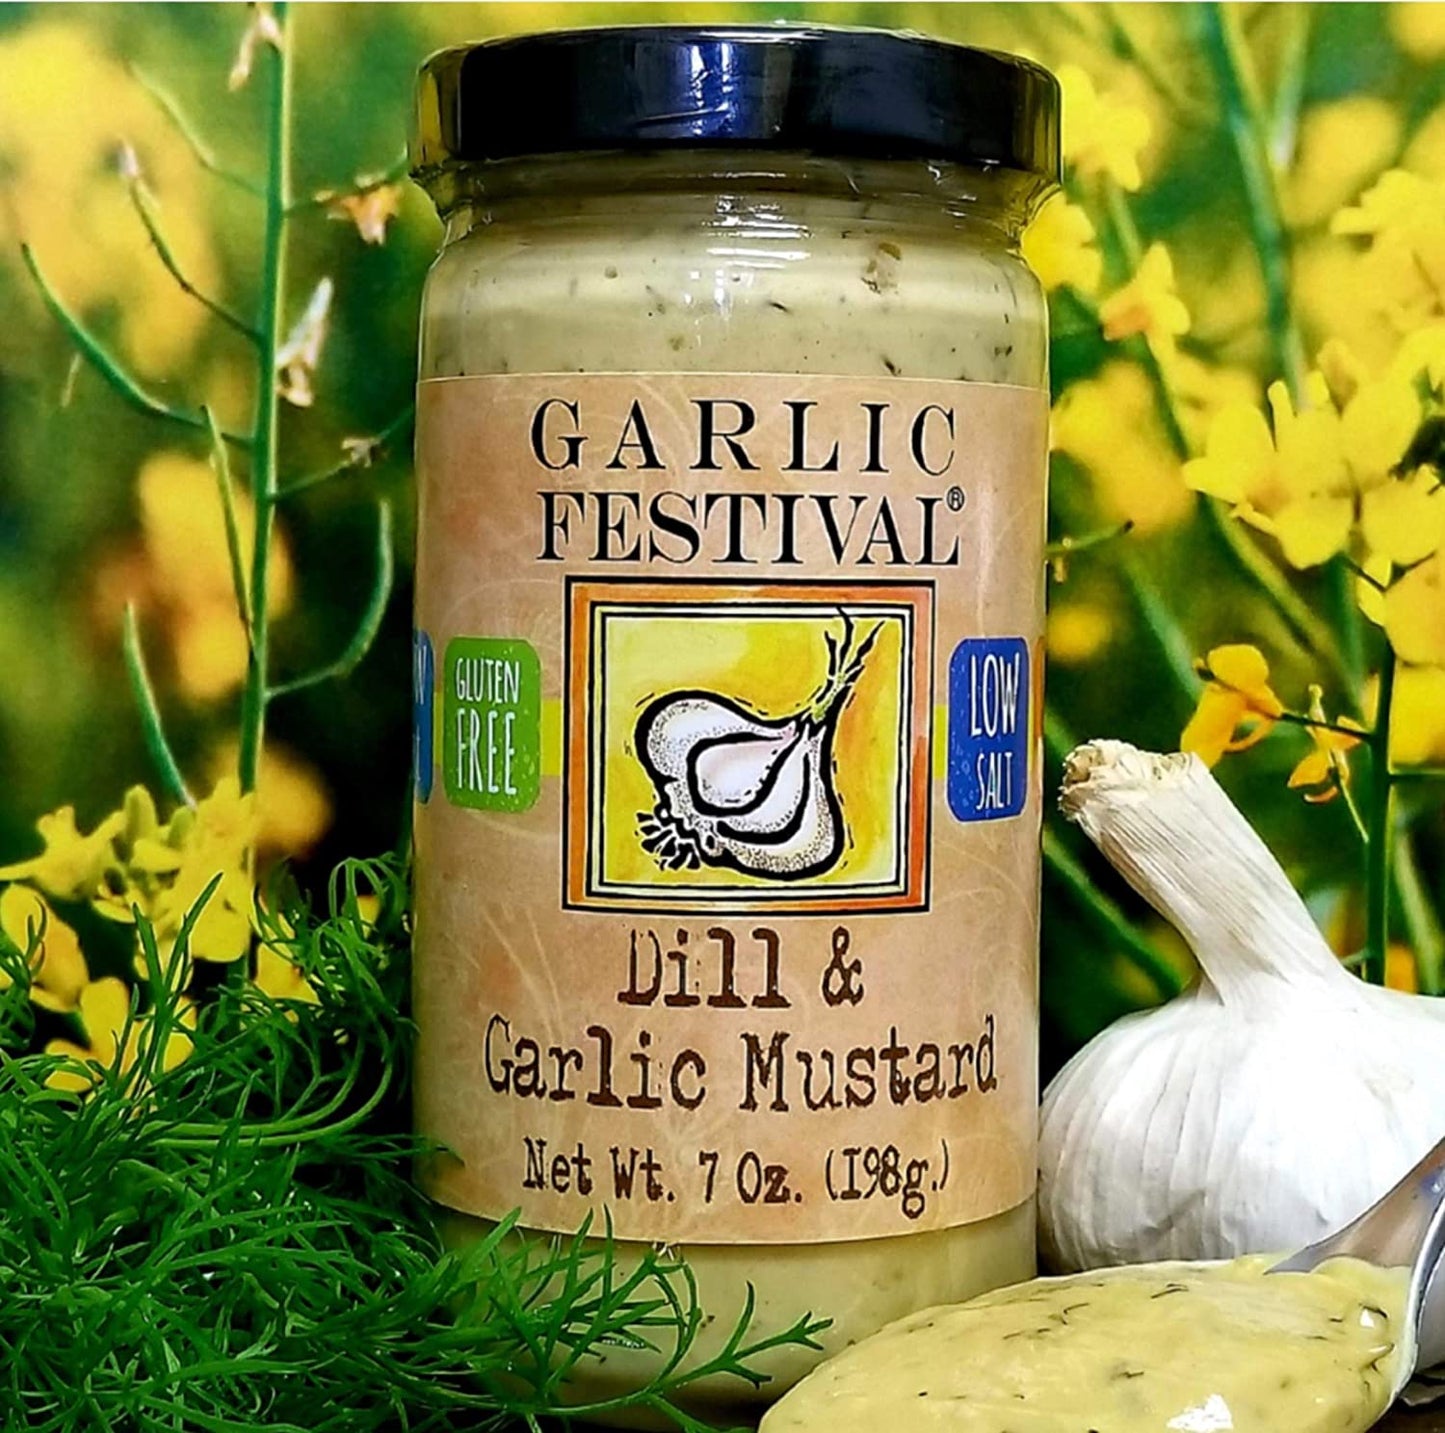 Dill & Garlic Mustard Garlic Festival Foods 7 oz $6.98